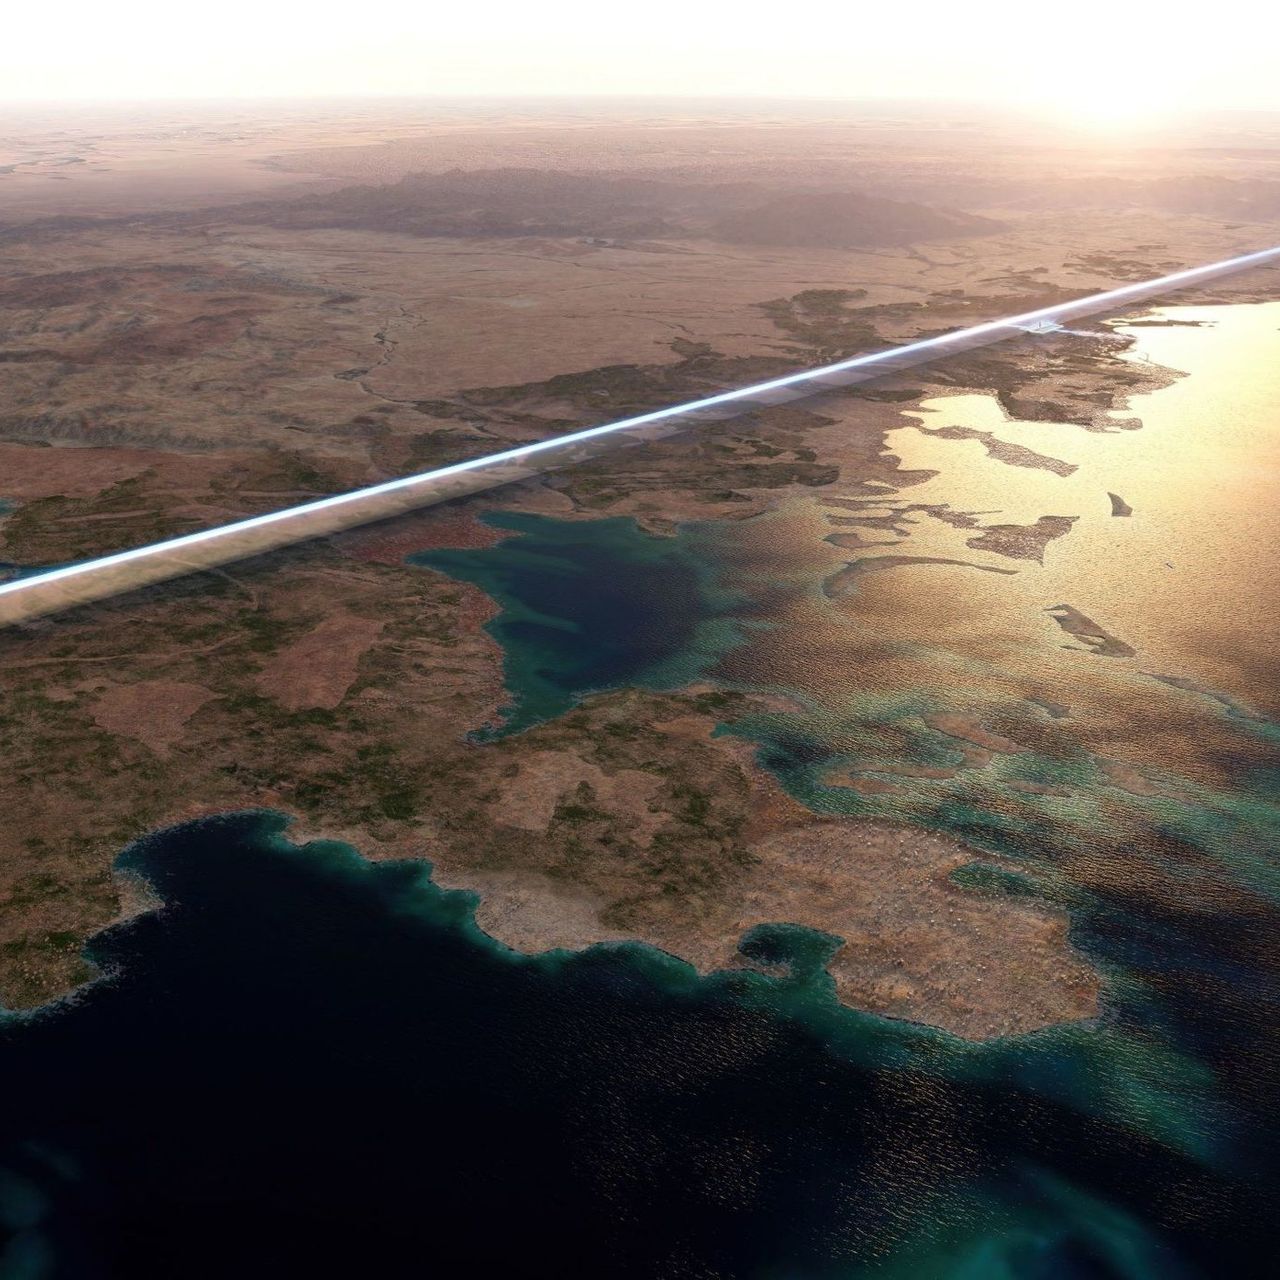 Longue de 170 km, « The Line » sera la première ville linéaire au monde